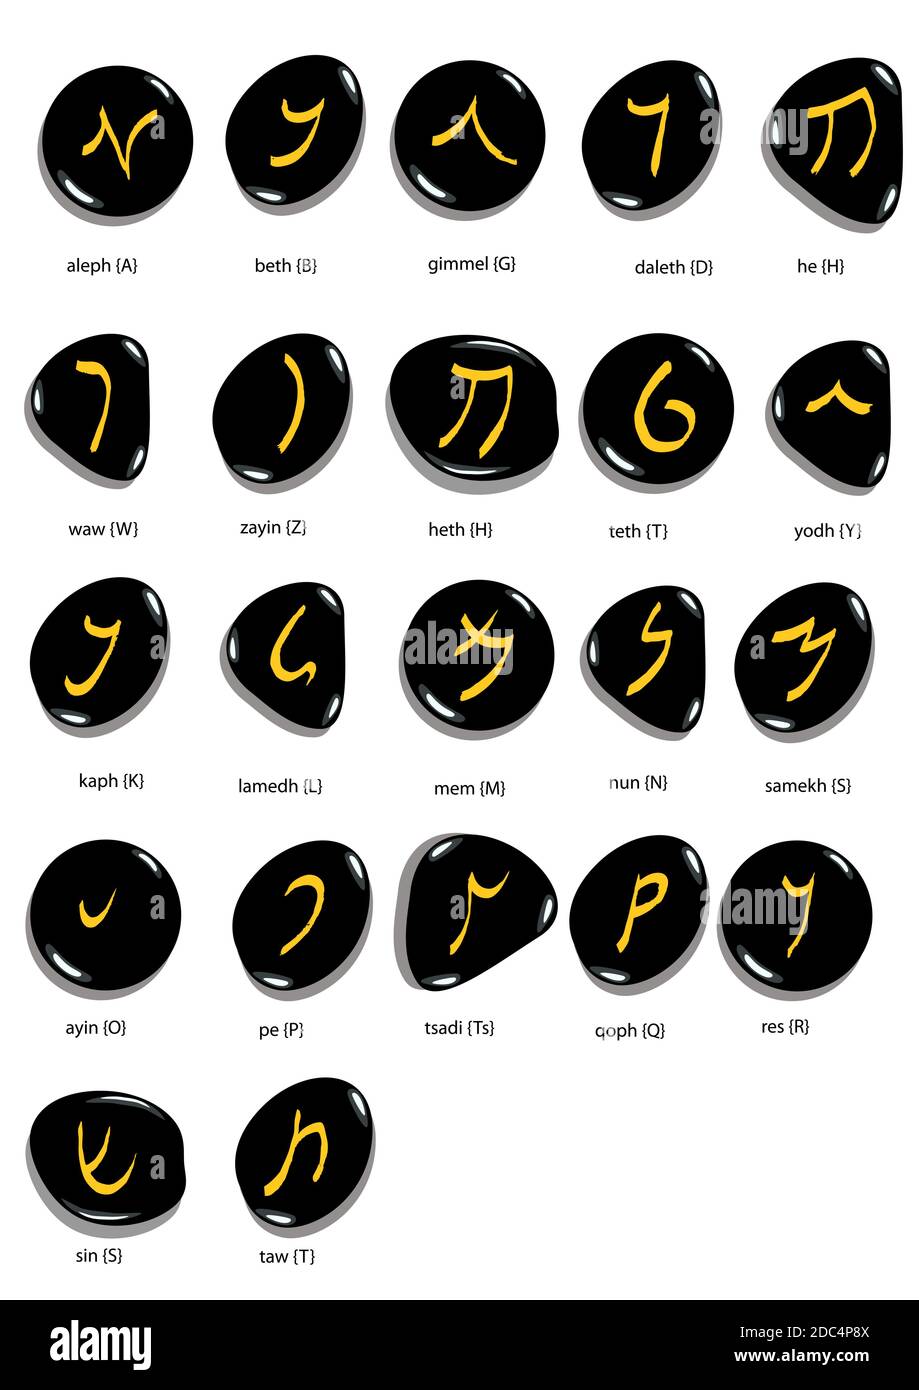 Script aramaico immagini e fotografie stock ad alta risoluzione - Alamy